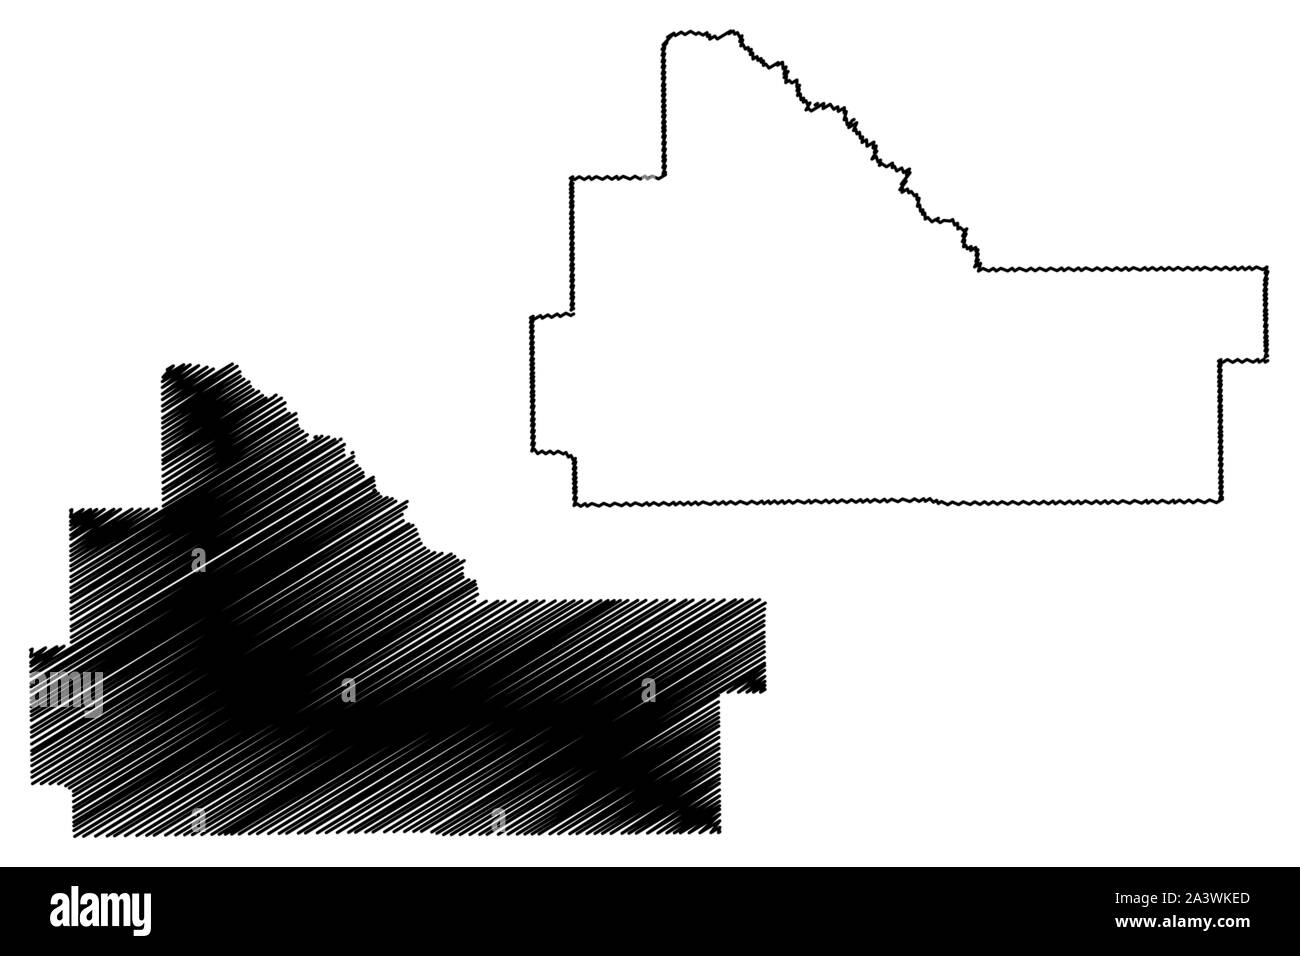 Wilcox County, Alabama (Grafschaften in Alabama, Vereinigte Staaten von Amerika, USA, USA, USA) Karte Vektor-illustration, kritzeln Skizze Wilcox Karte Stock Vektor